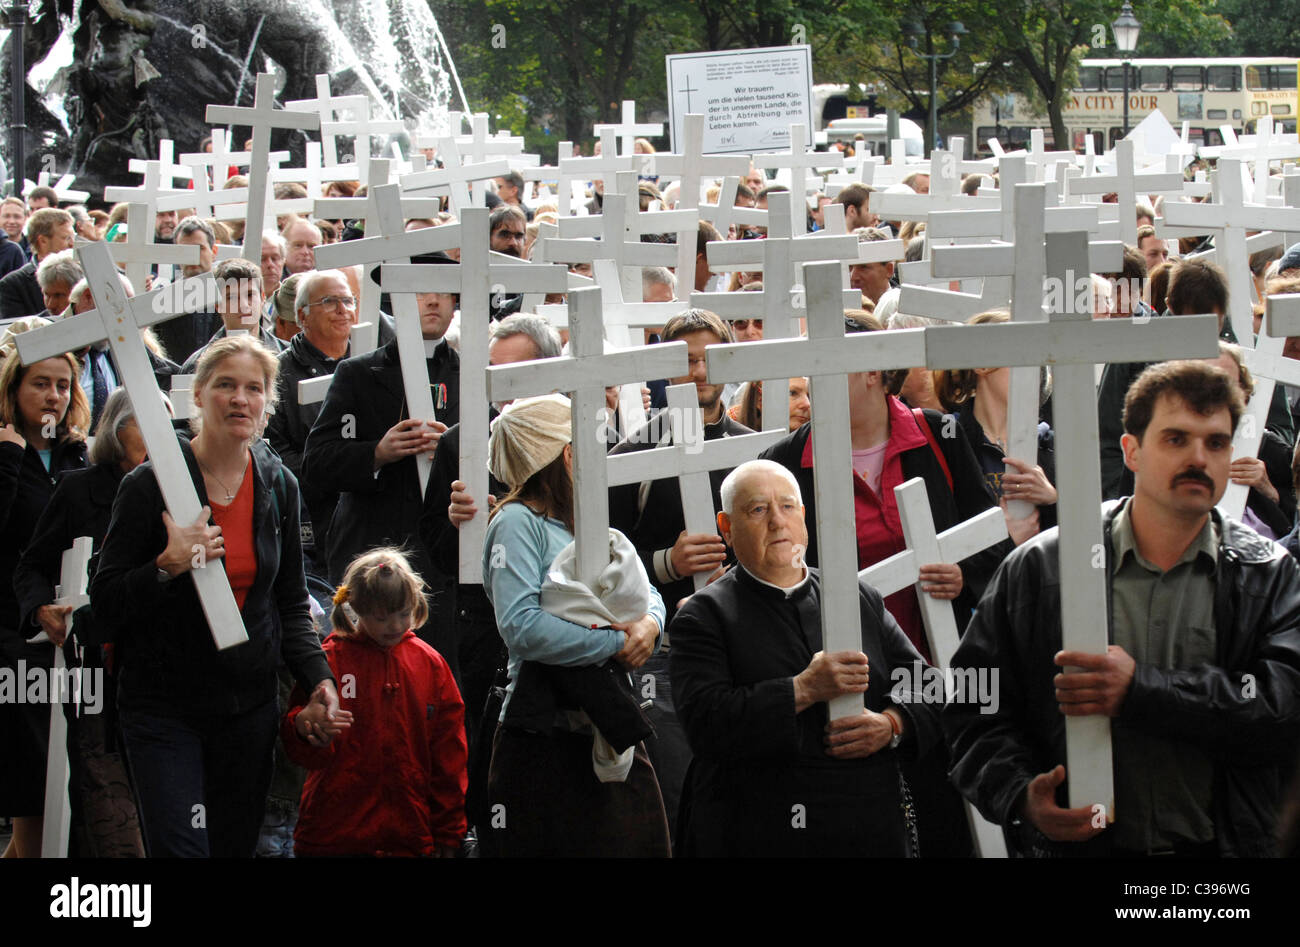 Manifestation anti-avortement à une marche silencieuse, Berlin, Allemagne Banque D'Images